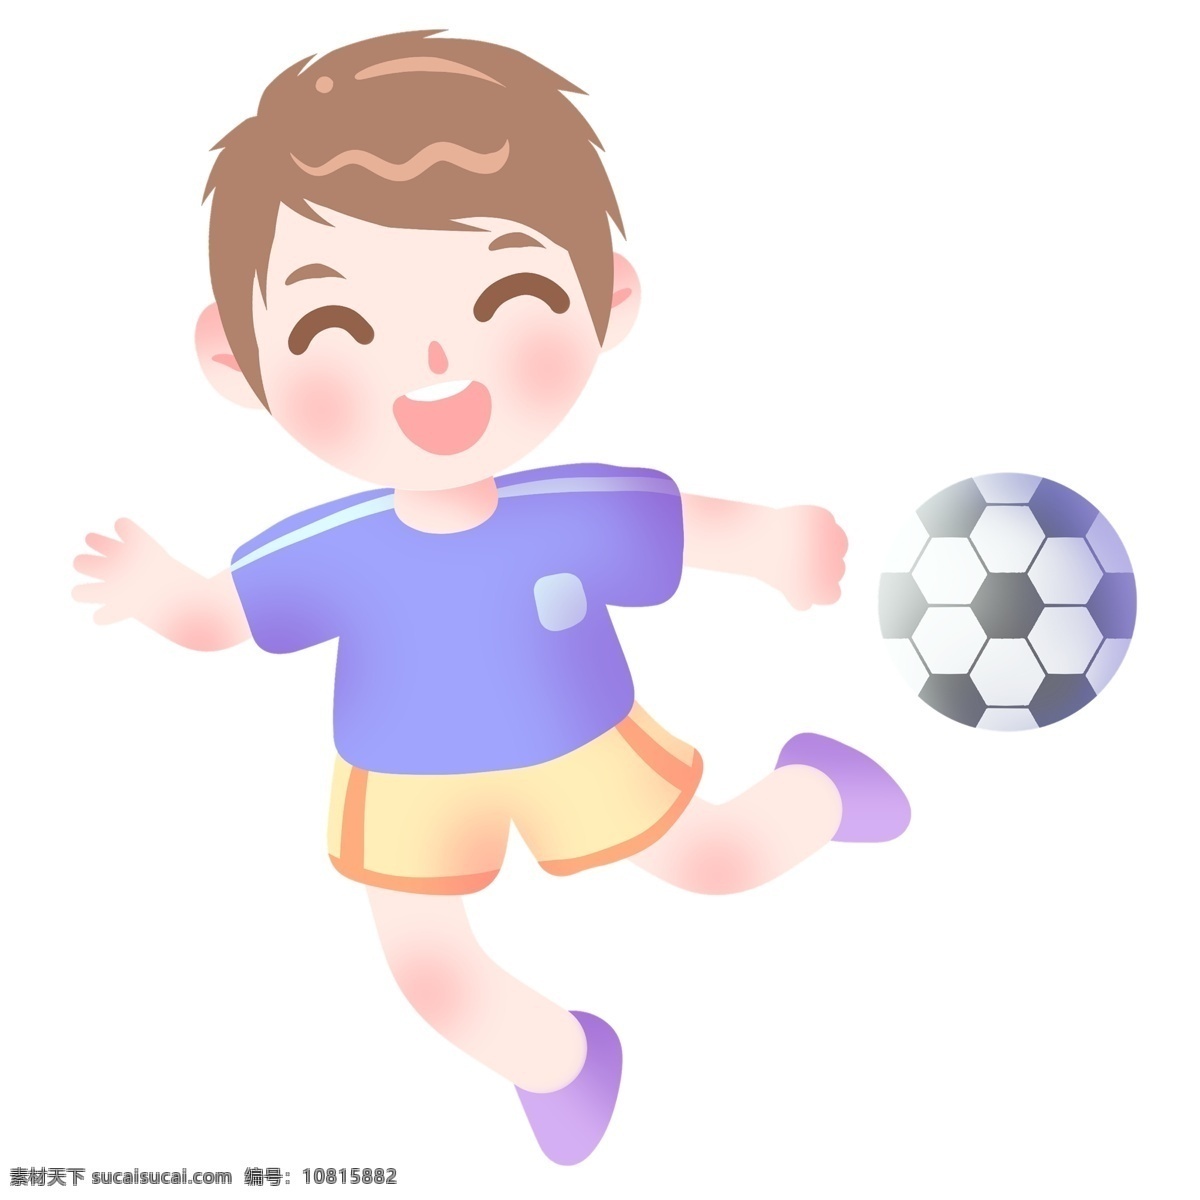 踢 足球 运动员 插画 小 男孩 足球运动员 锻炼身体 健身人物 体育比赛 足球比赛 卡通插画